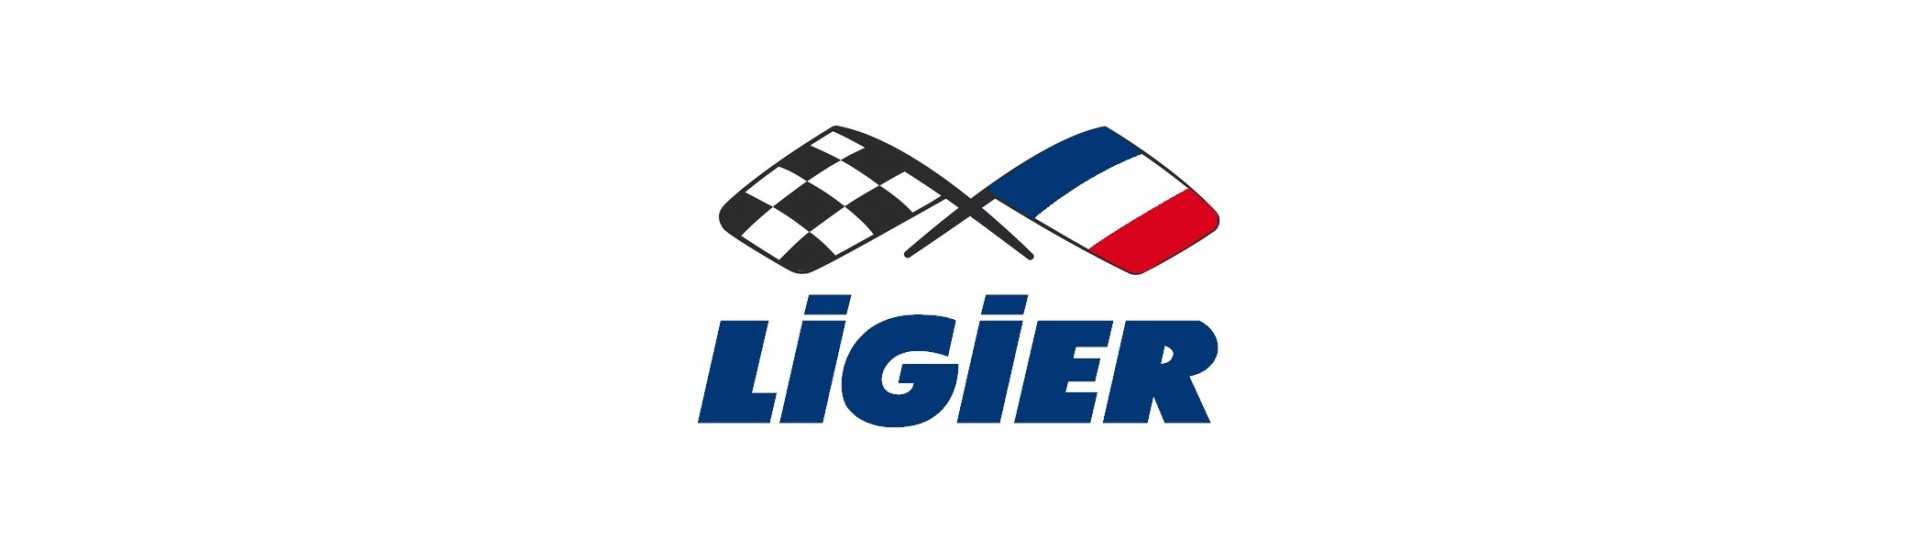 Silent Dreieck Blocks Best Preis Auto ohne Lizenz Ligier